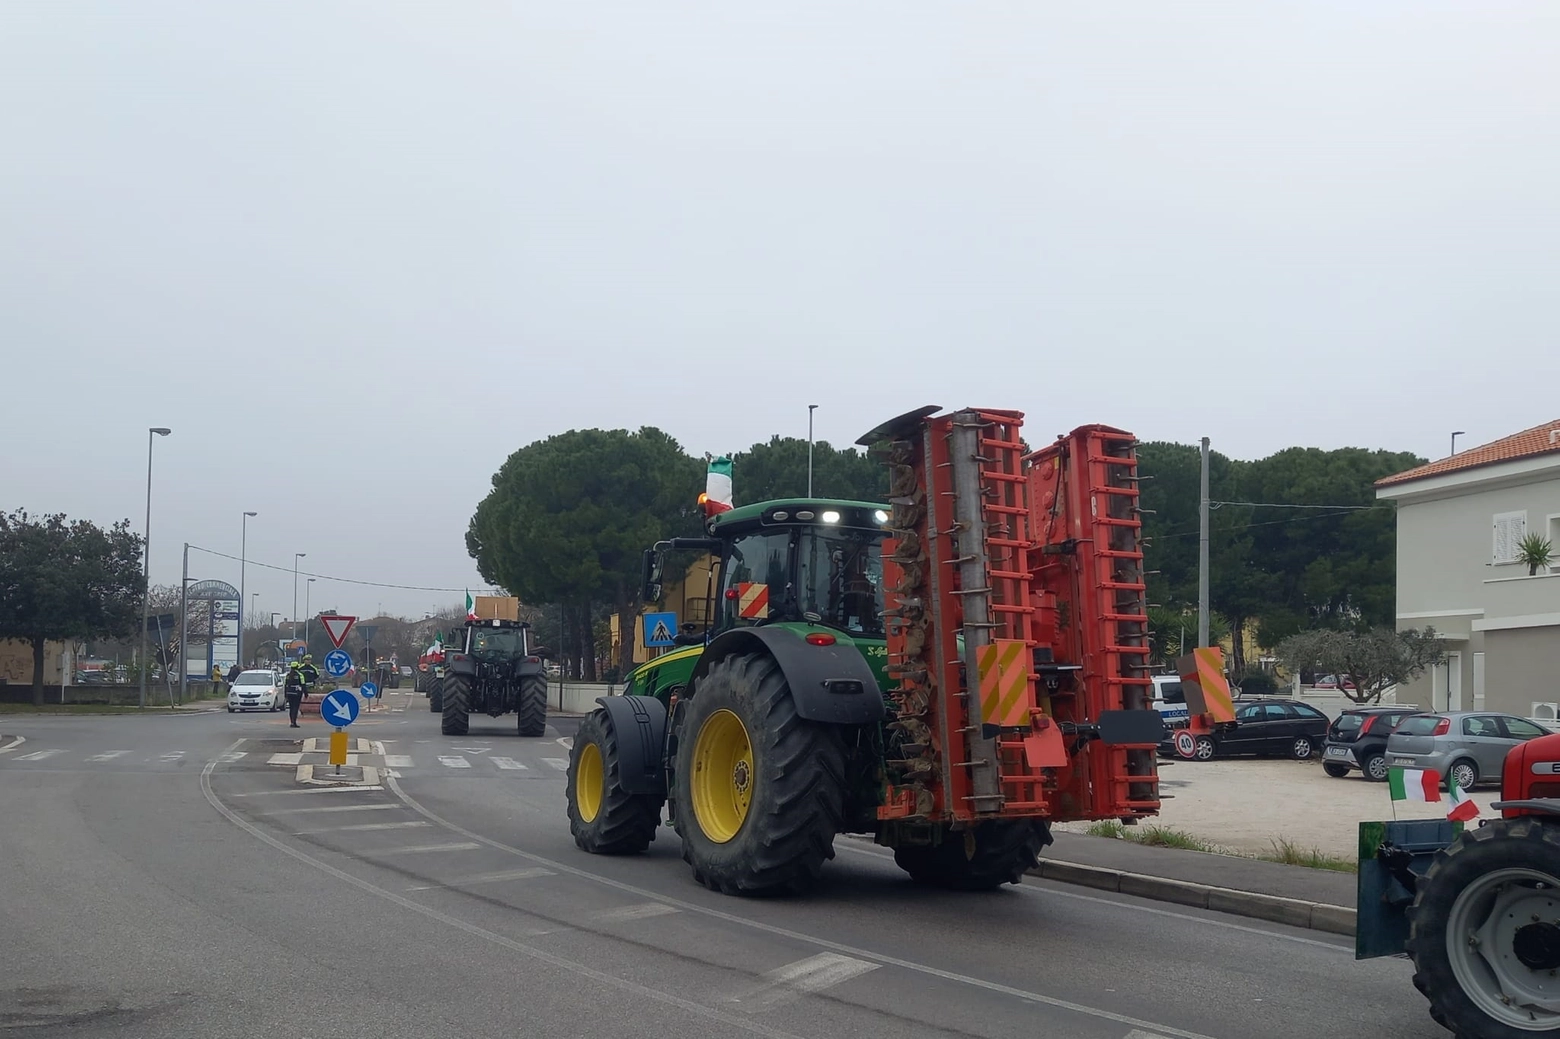 La protesta dei trattori a Fano, qualche rallentamento ma nessun blocco del traffico (foto di Anna Marchetti)